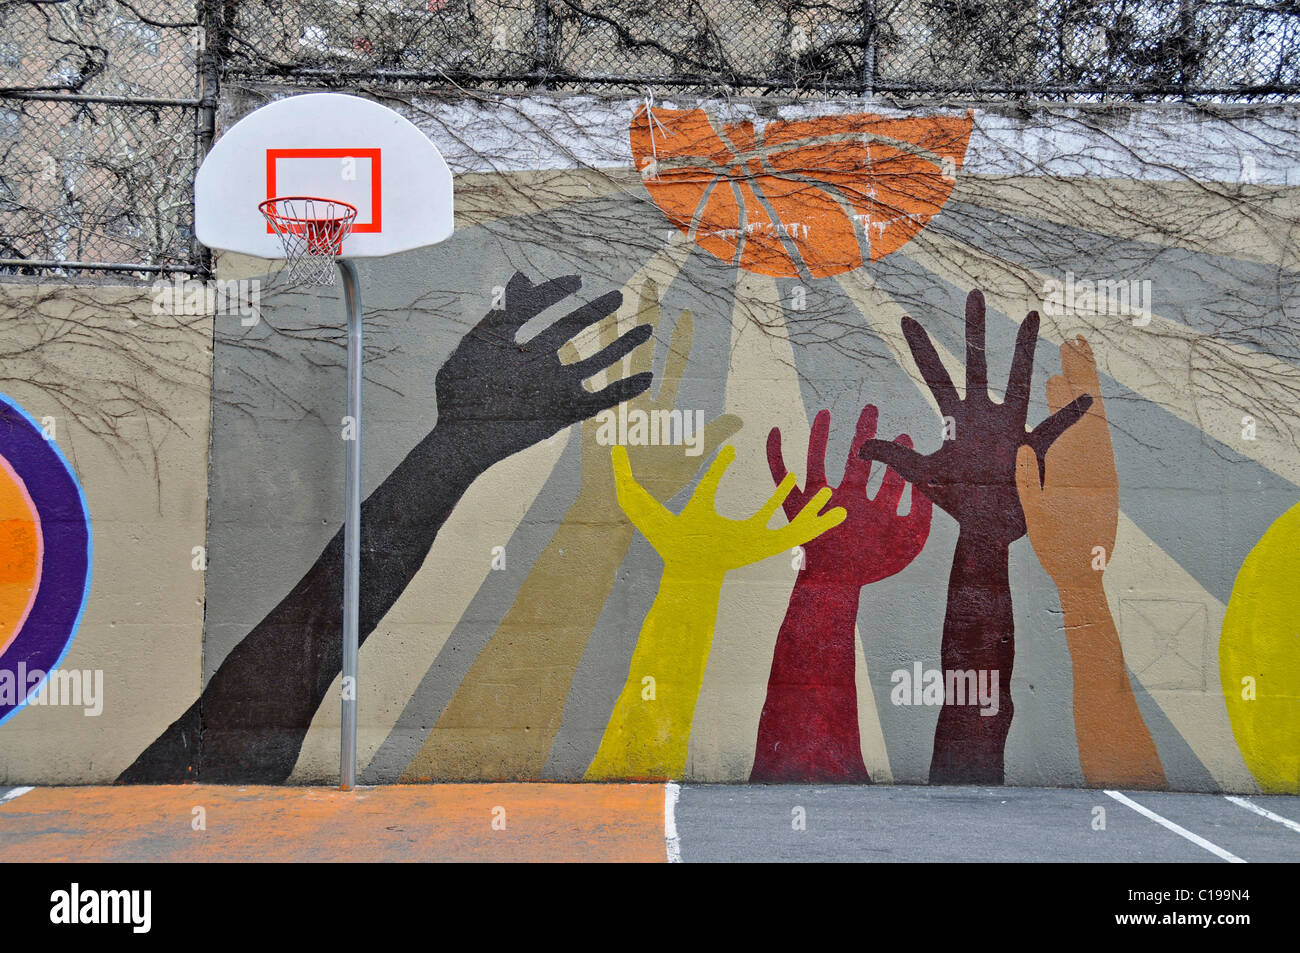 Peinture murale encourageant des jeux de ballon, l'école dans Harlem, Manhattan, New York City, USA, Amérique du Nord Banque D'Images